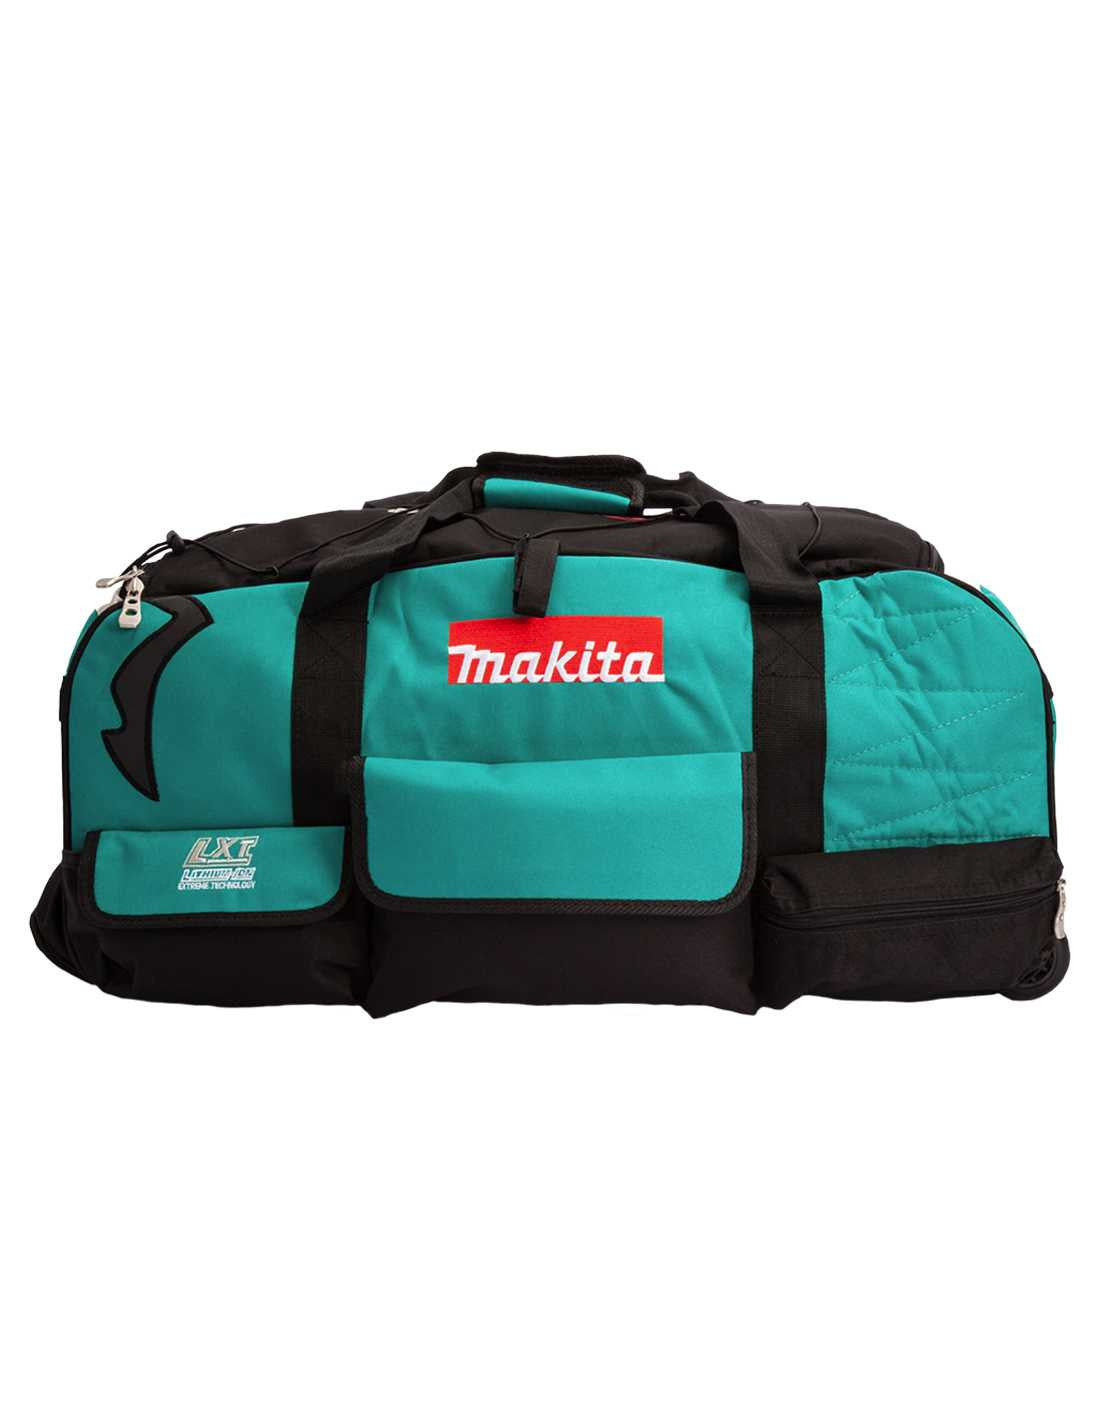 Makita-Set mit 9 Werkzeugen + 3 5,0-Ah-Akkus + Ladegerät + 2 Taschen DLX9243BL3